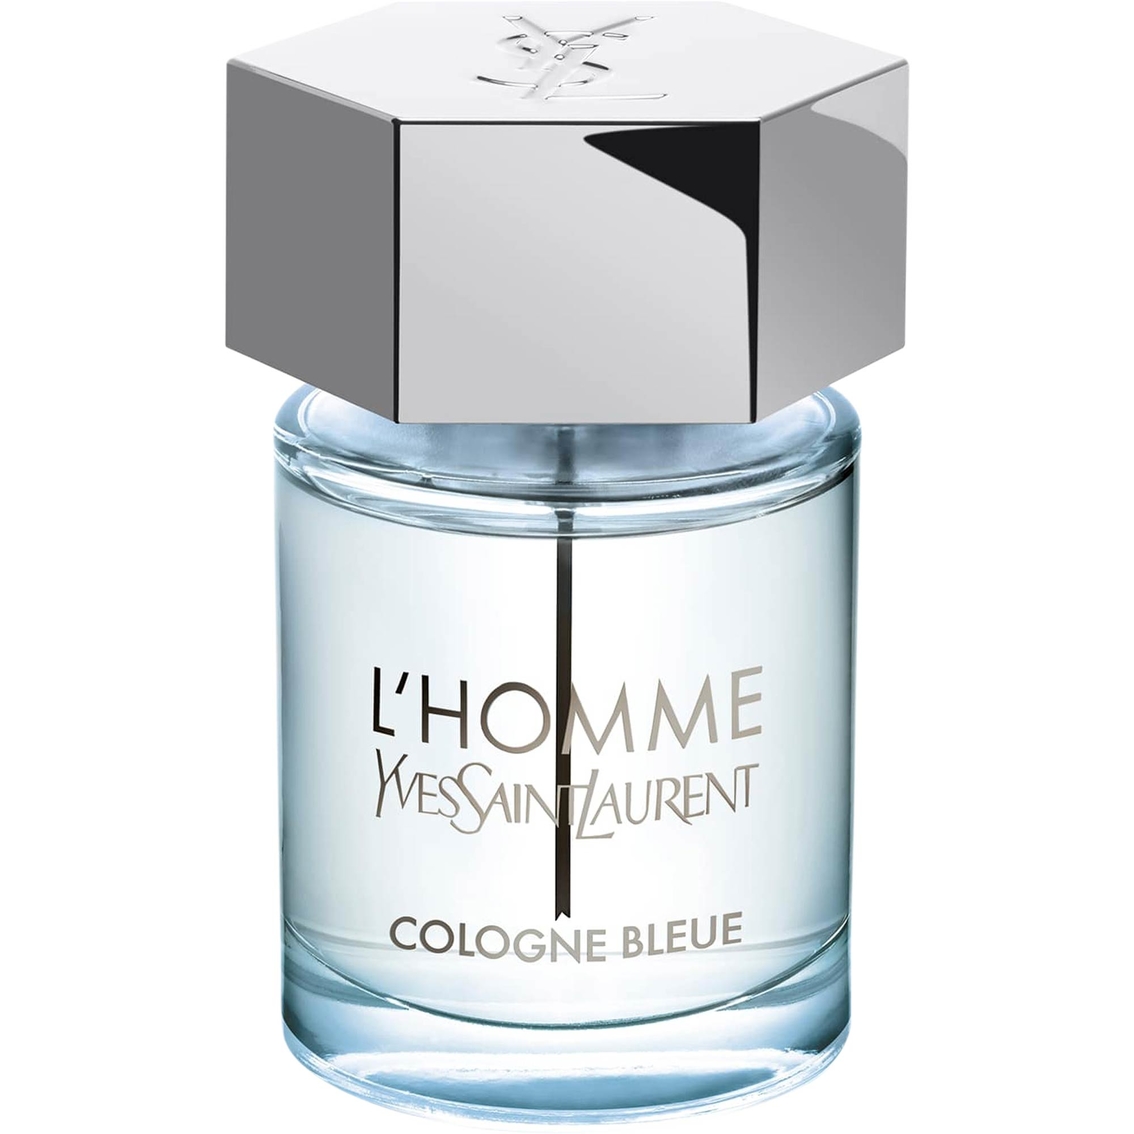 Yves Saint Laurent L'homme Cologne Bleue Eau De Toilette Spray, Men's  Fragrances, Beauty & Health